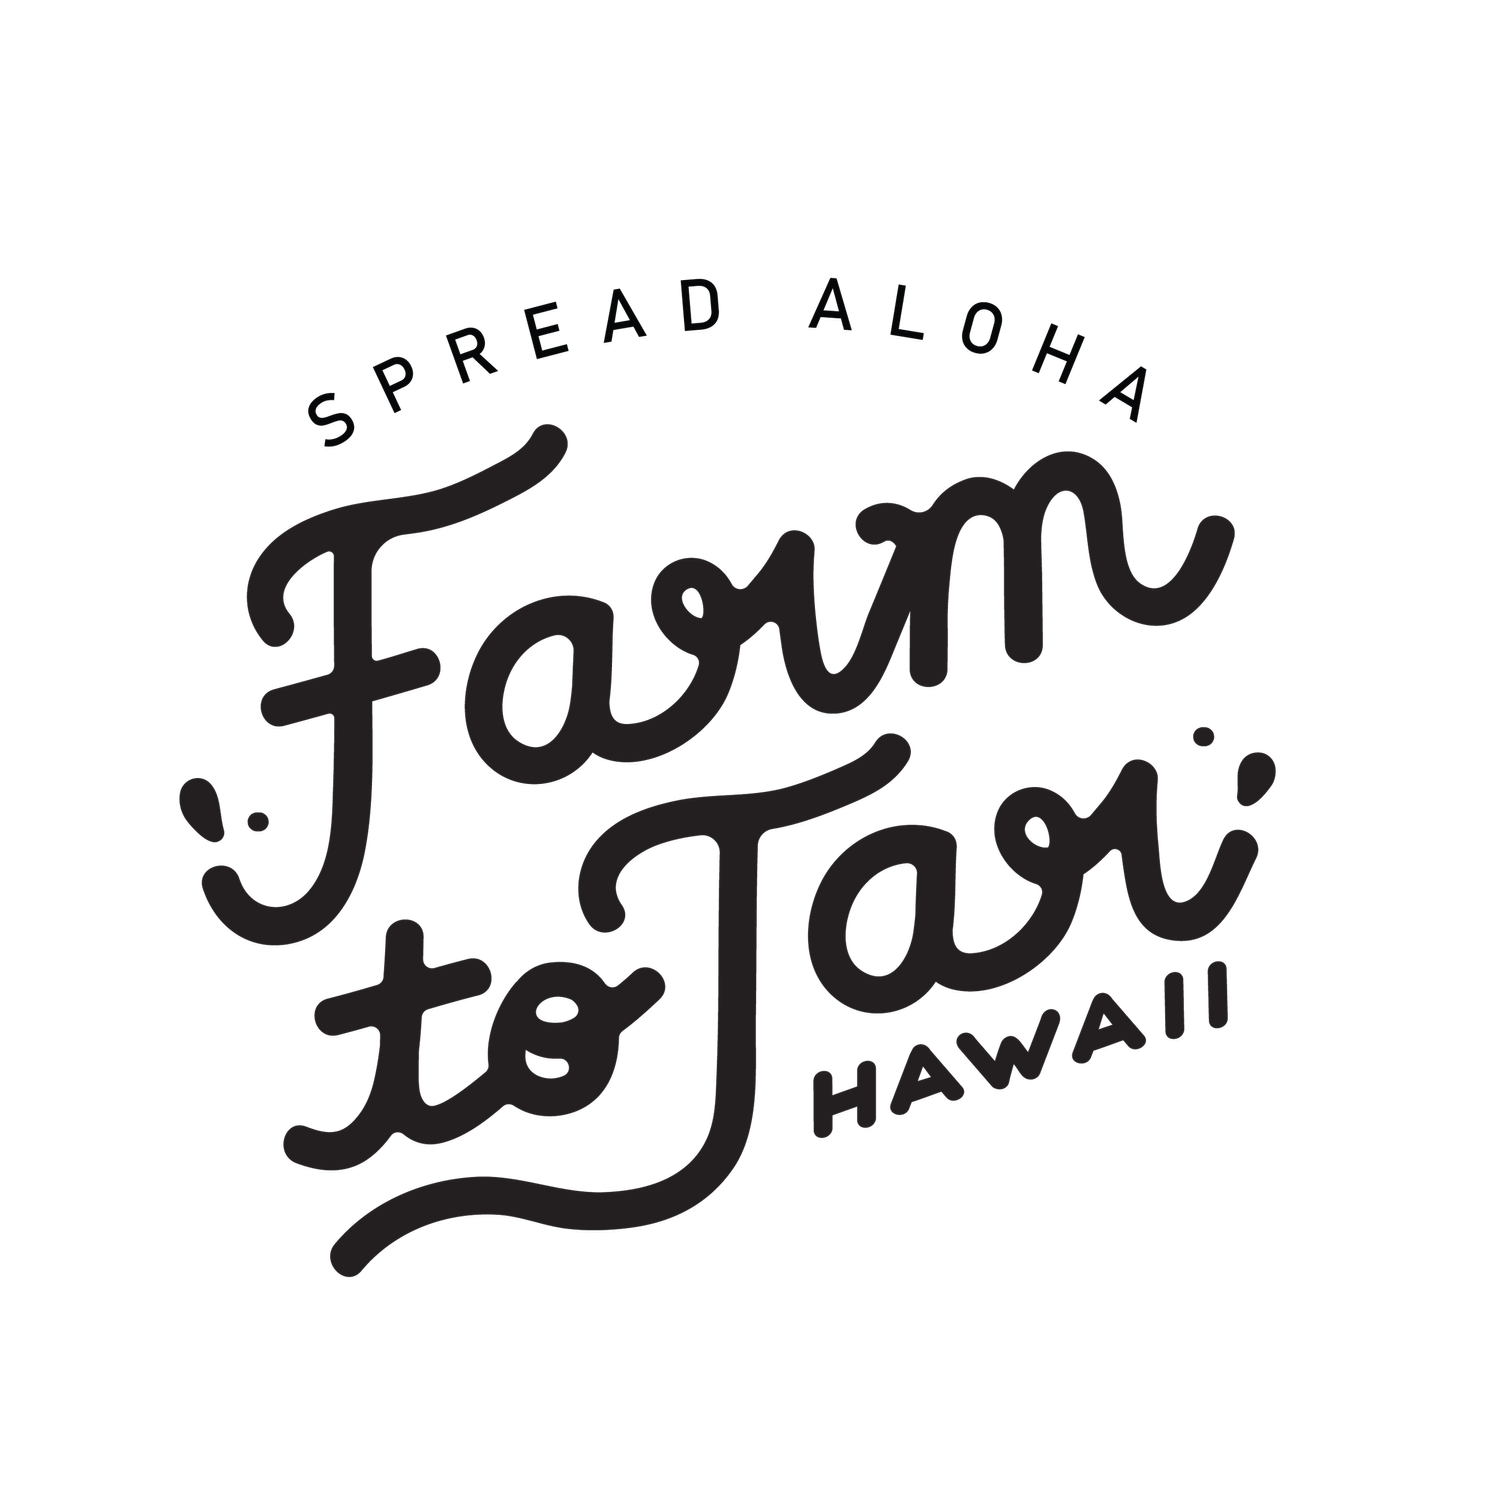 Farm to Jar Hawaii